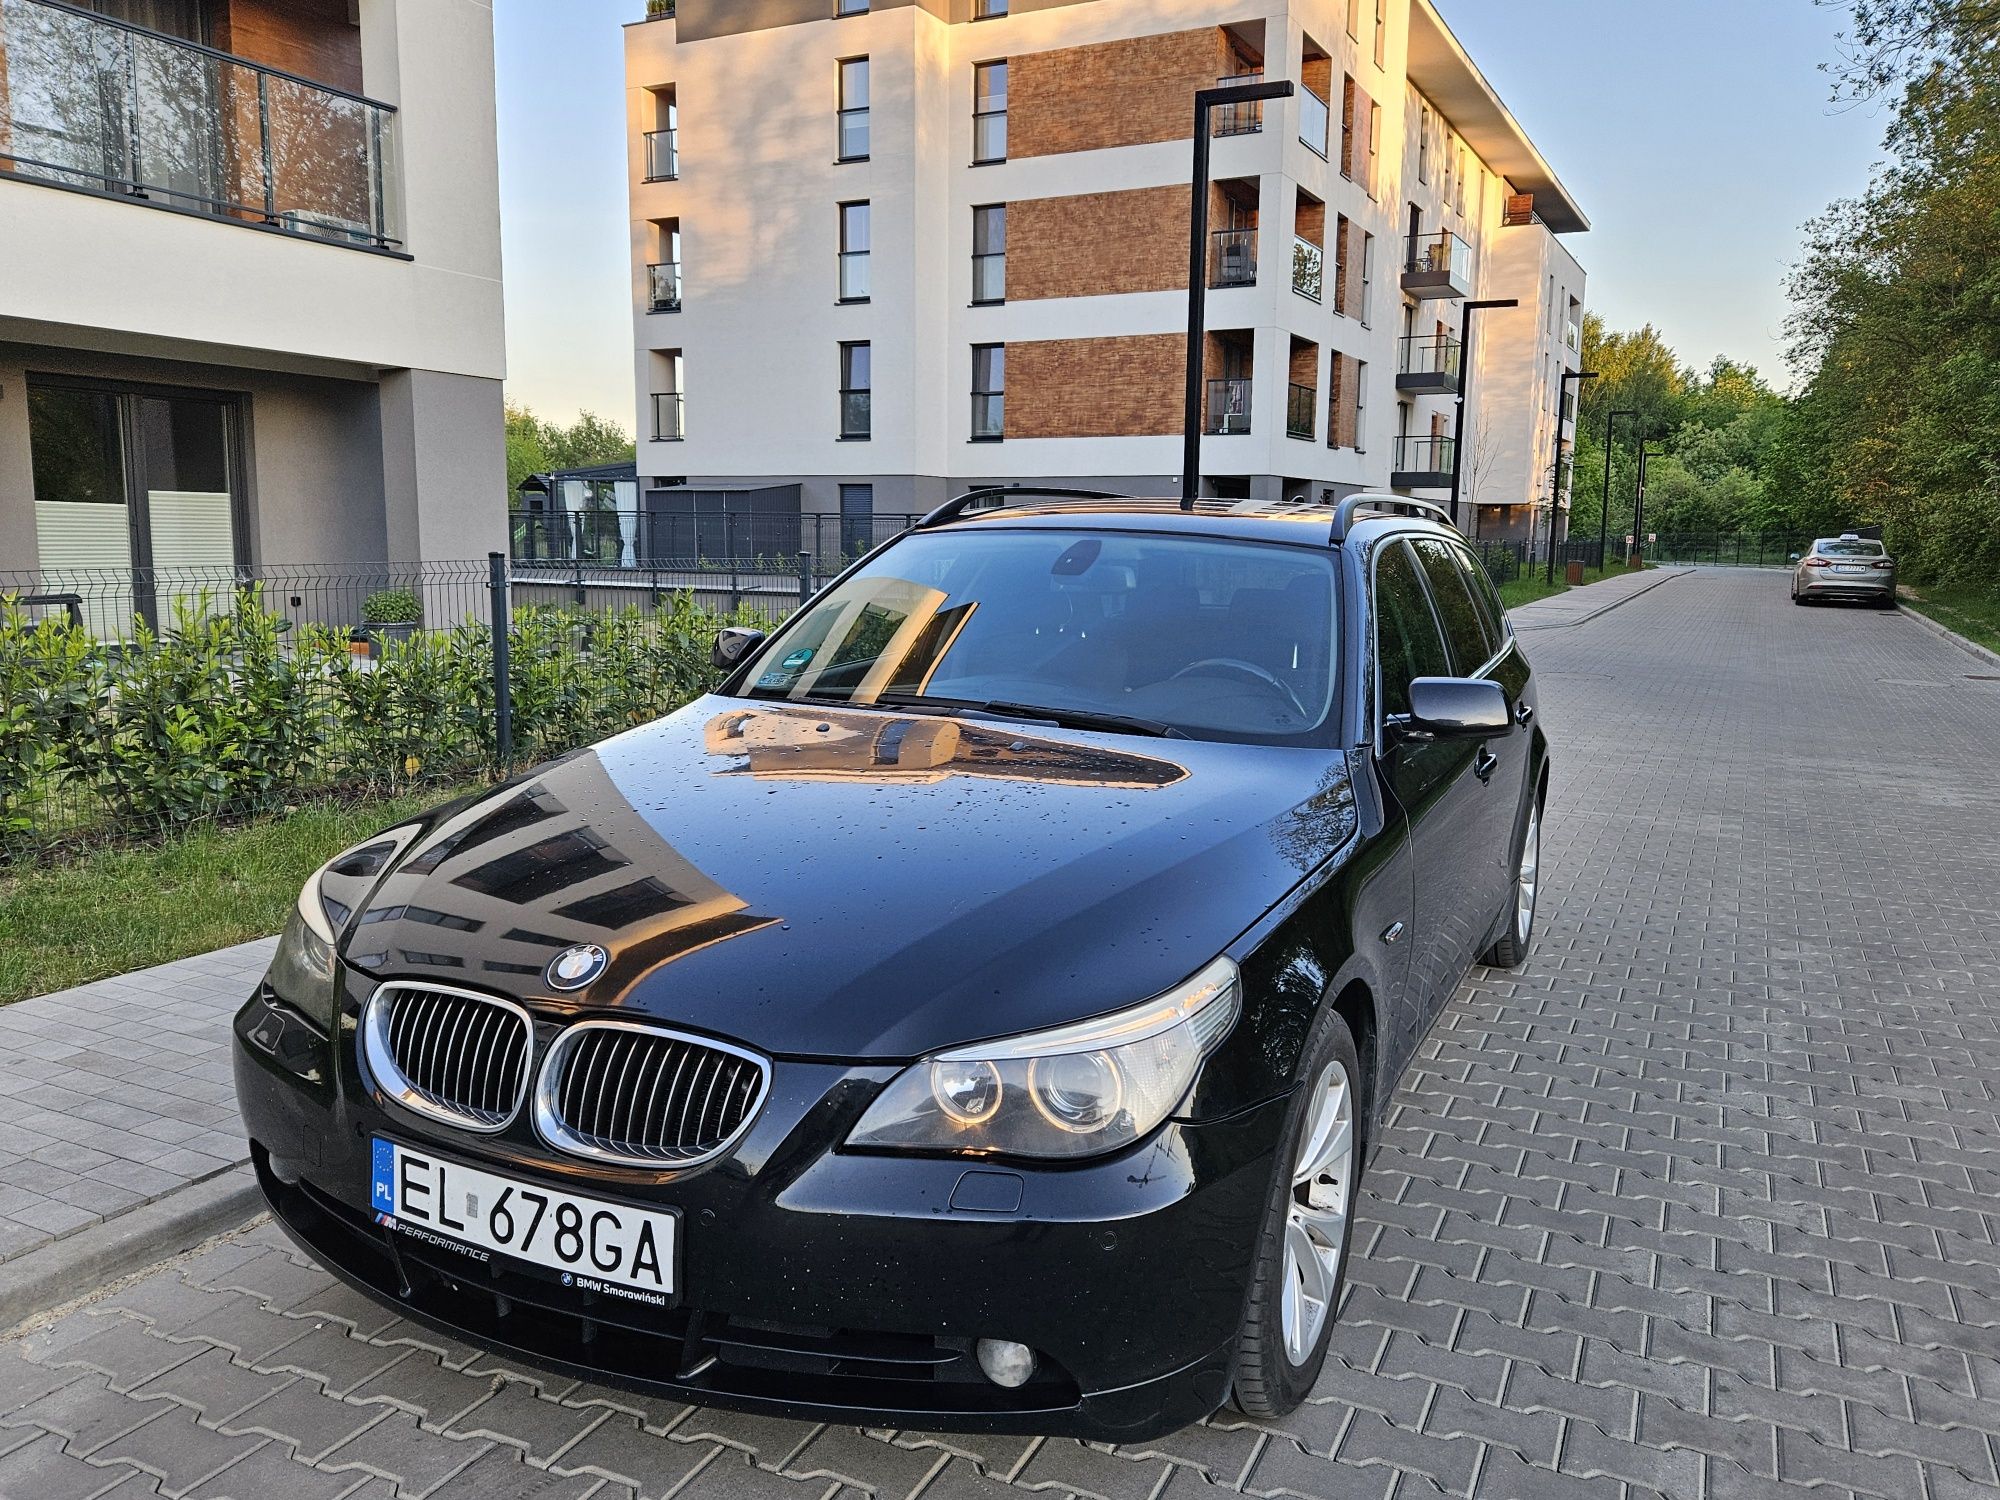 BMW 520d E61 M47, od 2009r w  jednej rodzinie